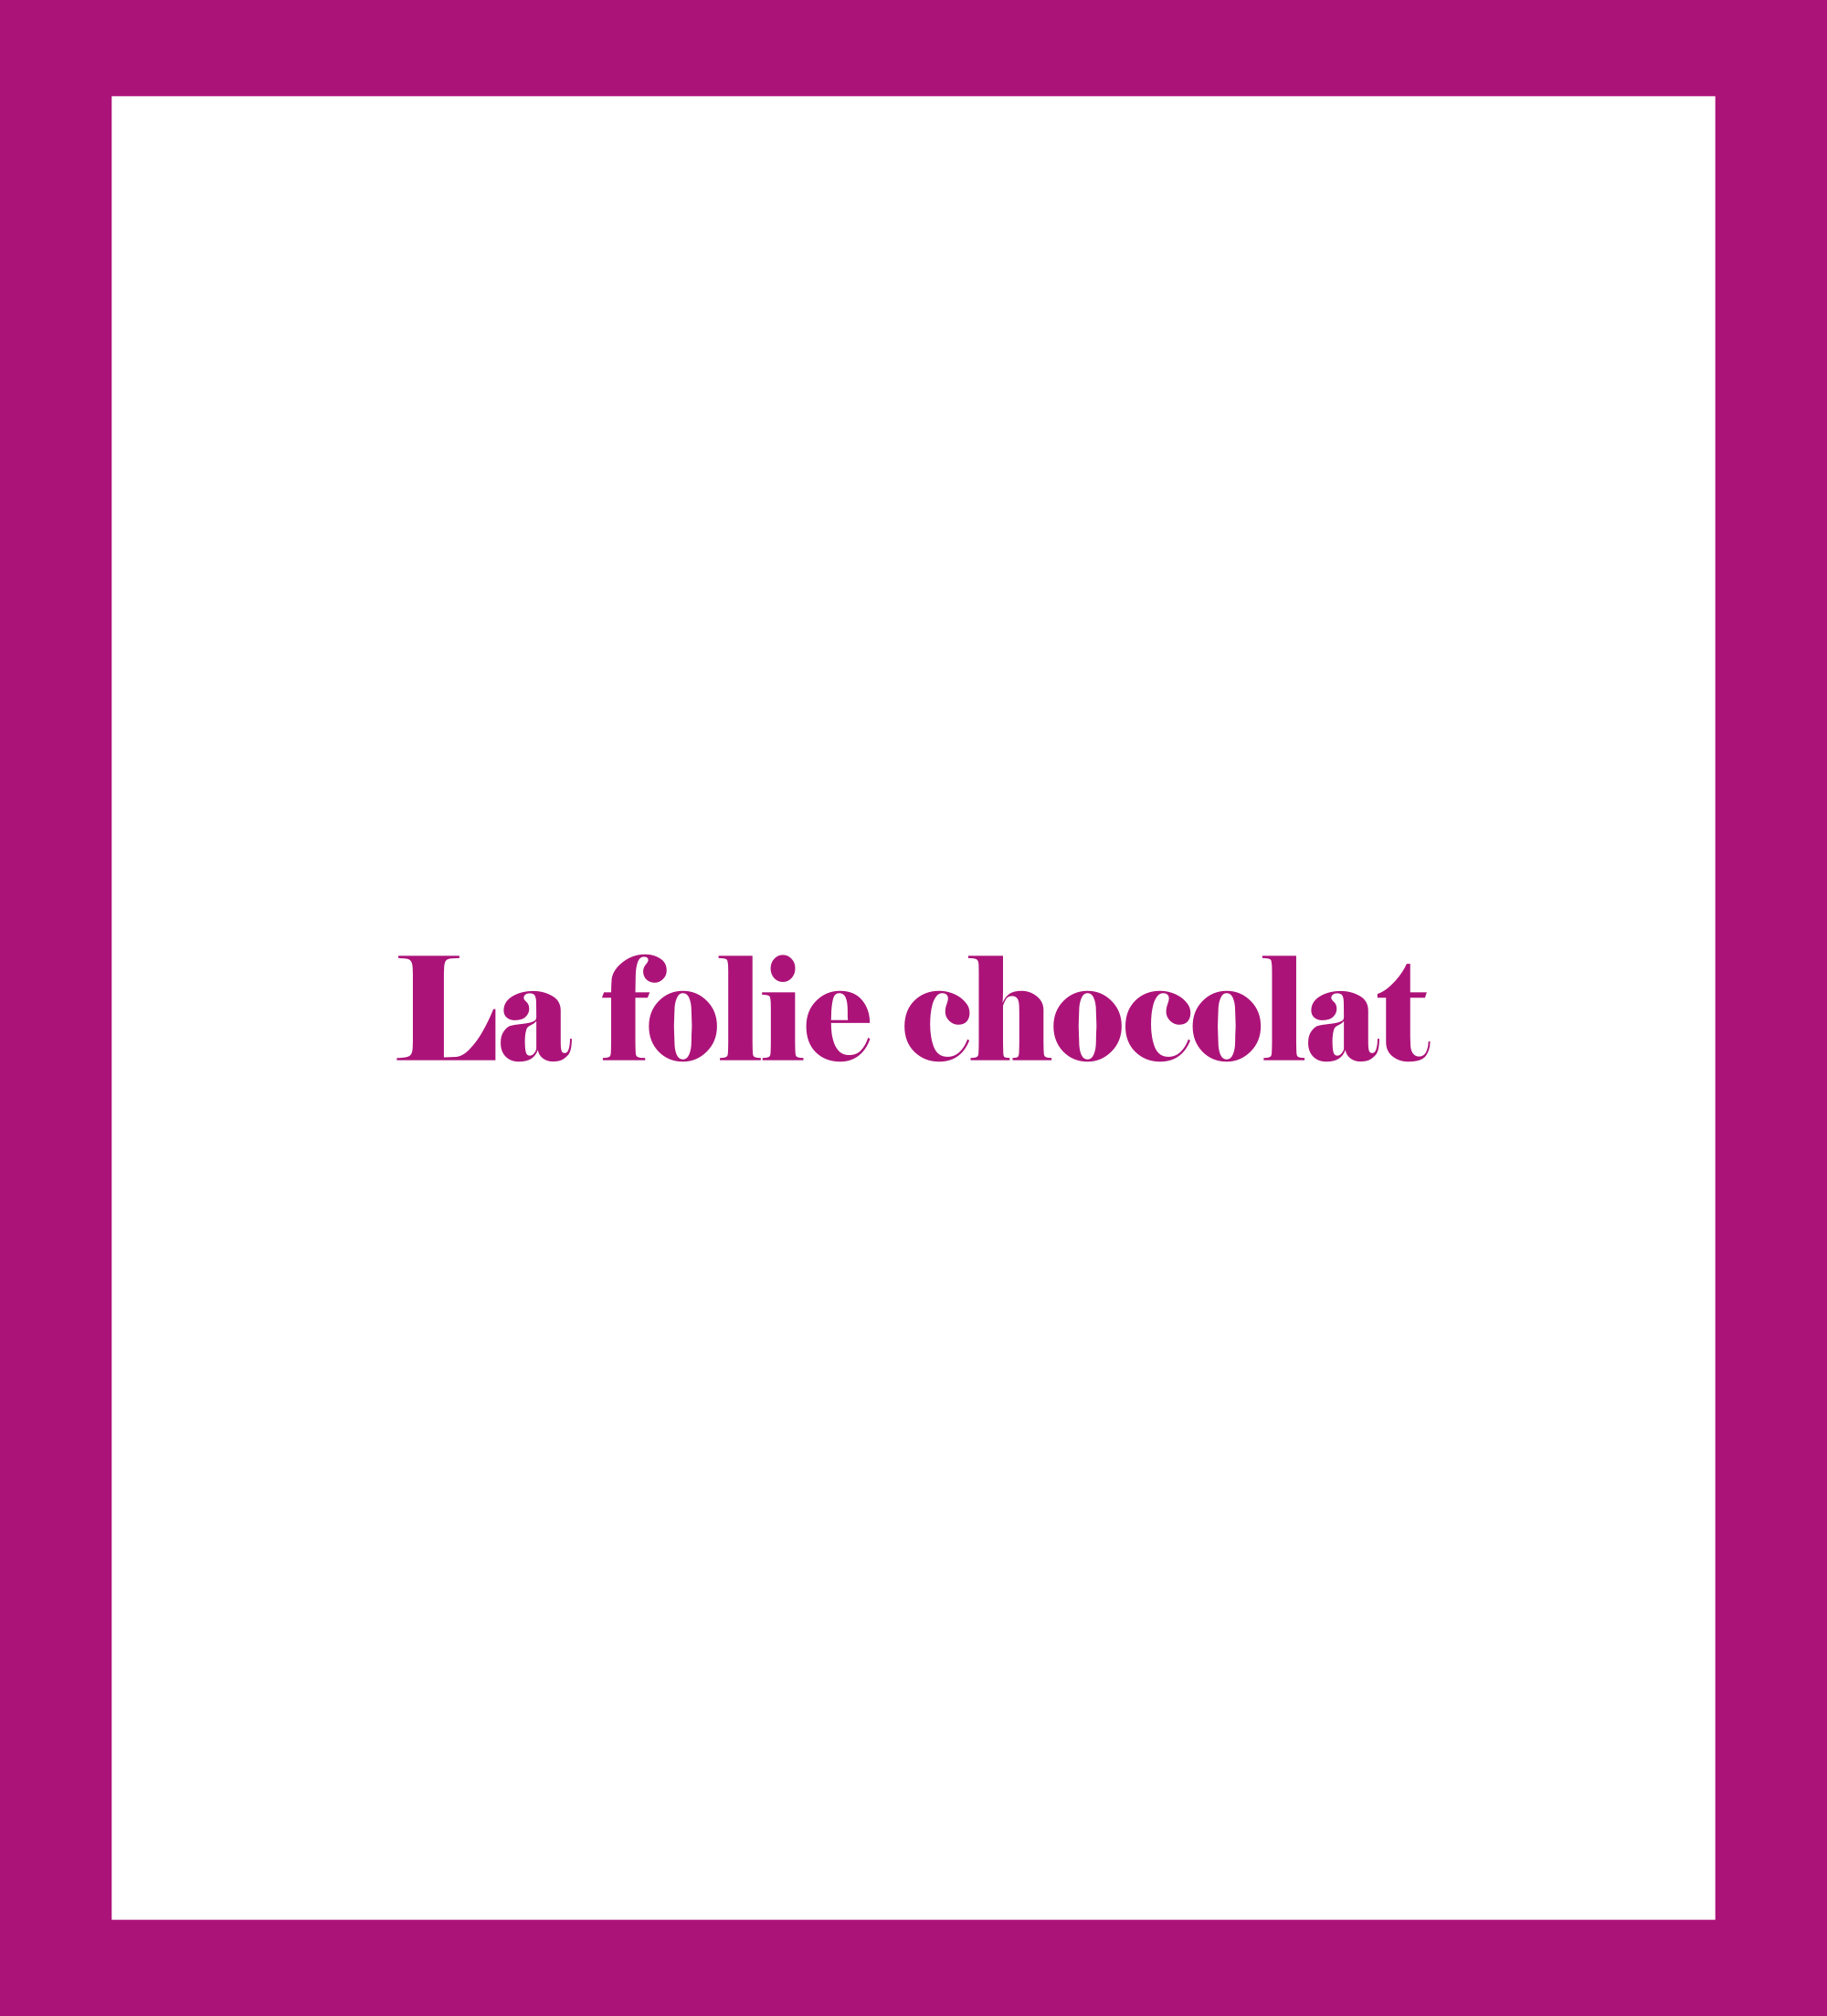 Caratula de La folie chocolat (Locura por el chocolate) 